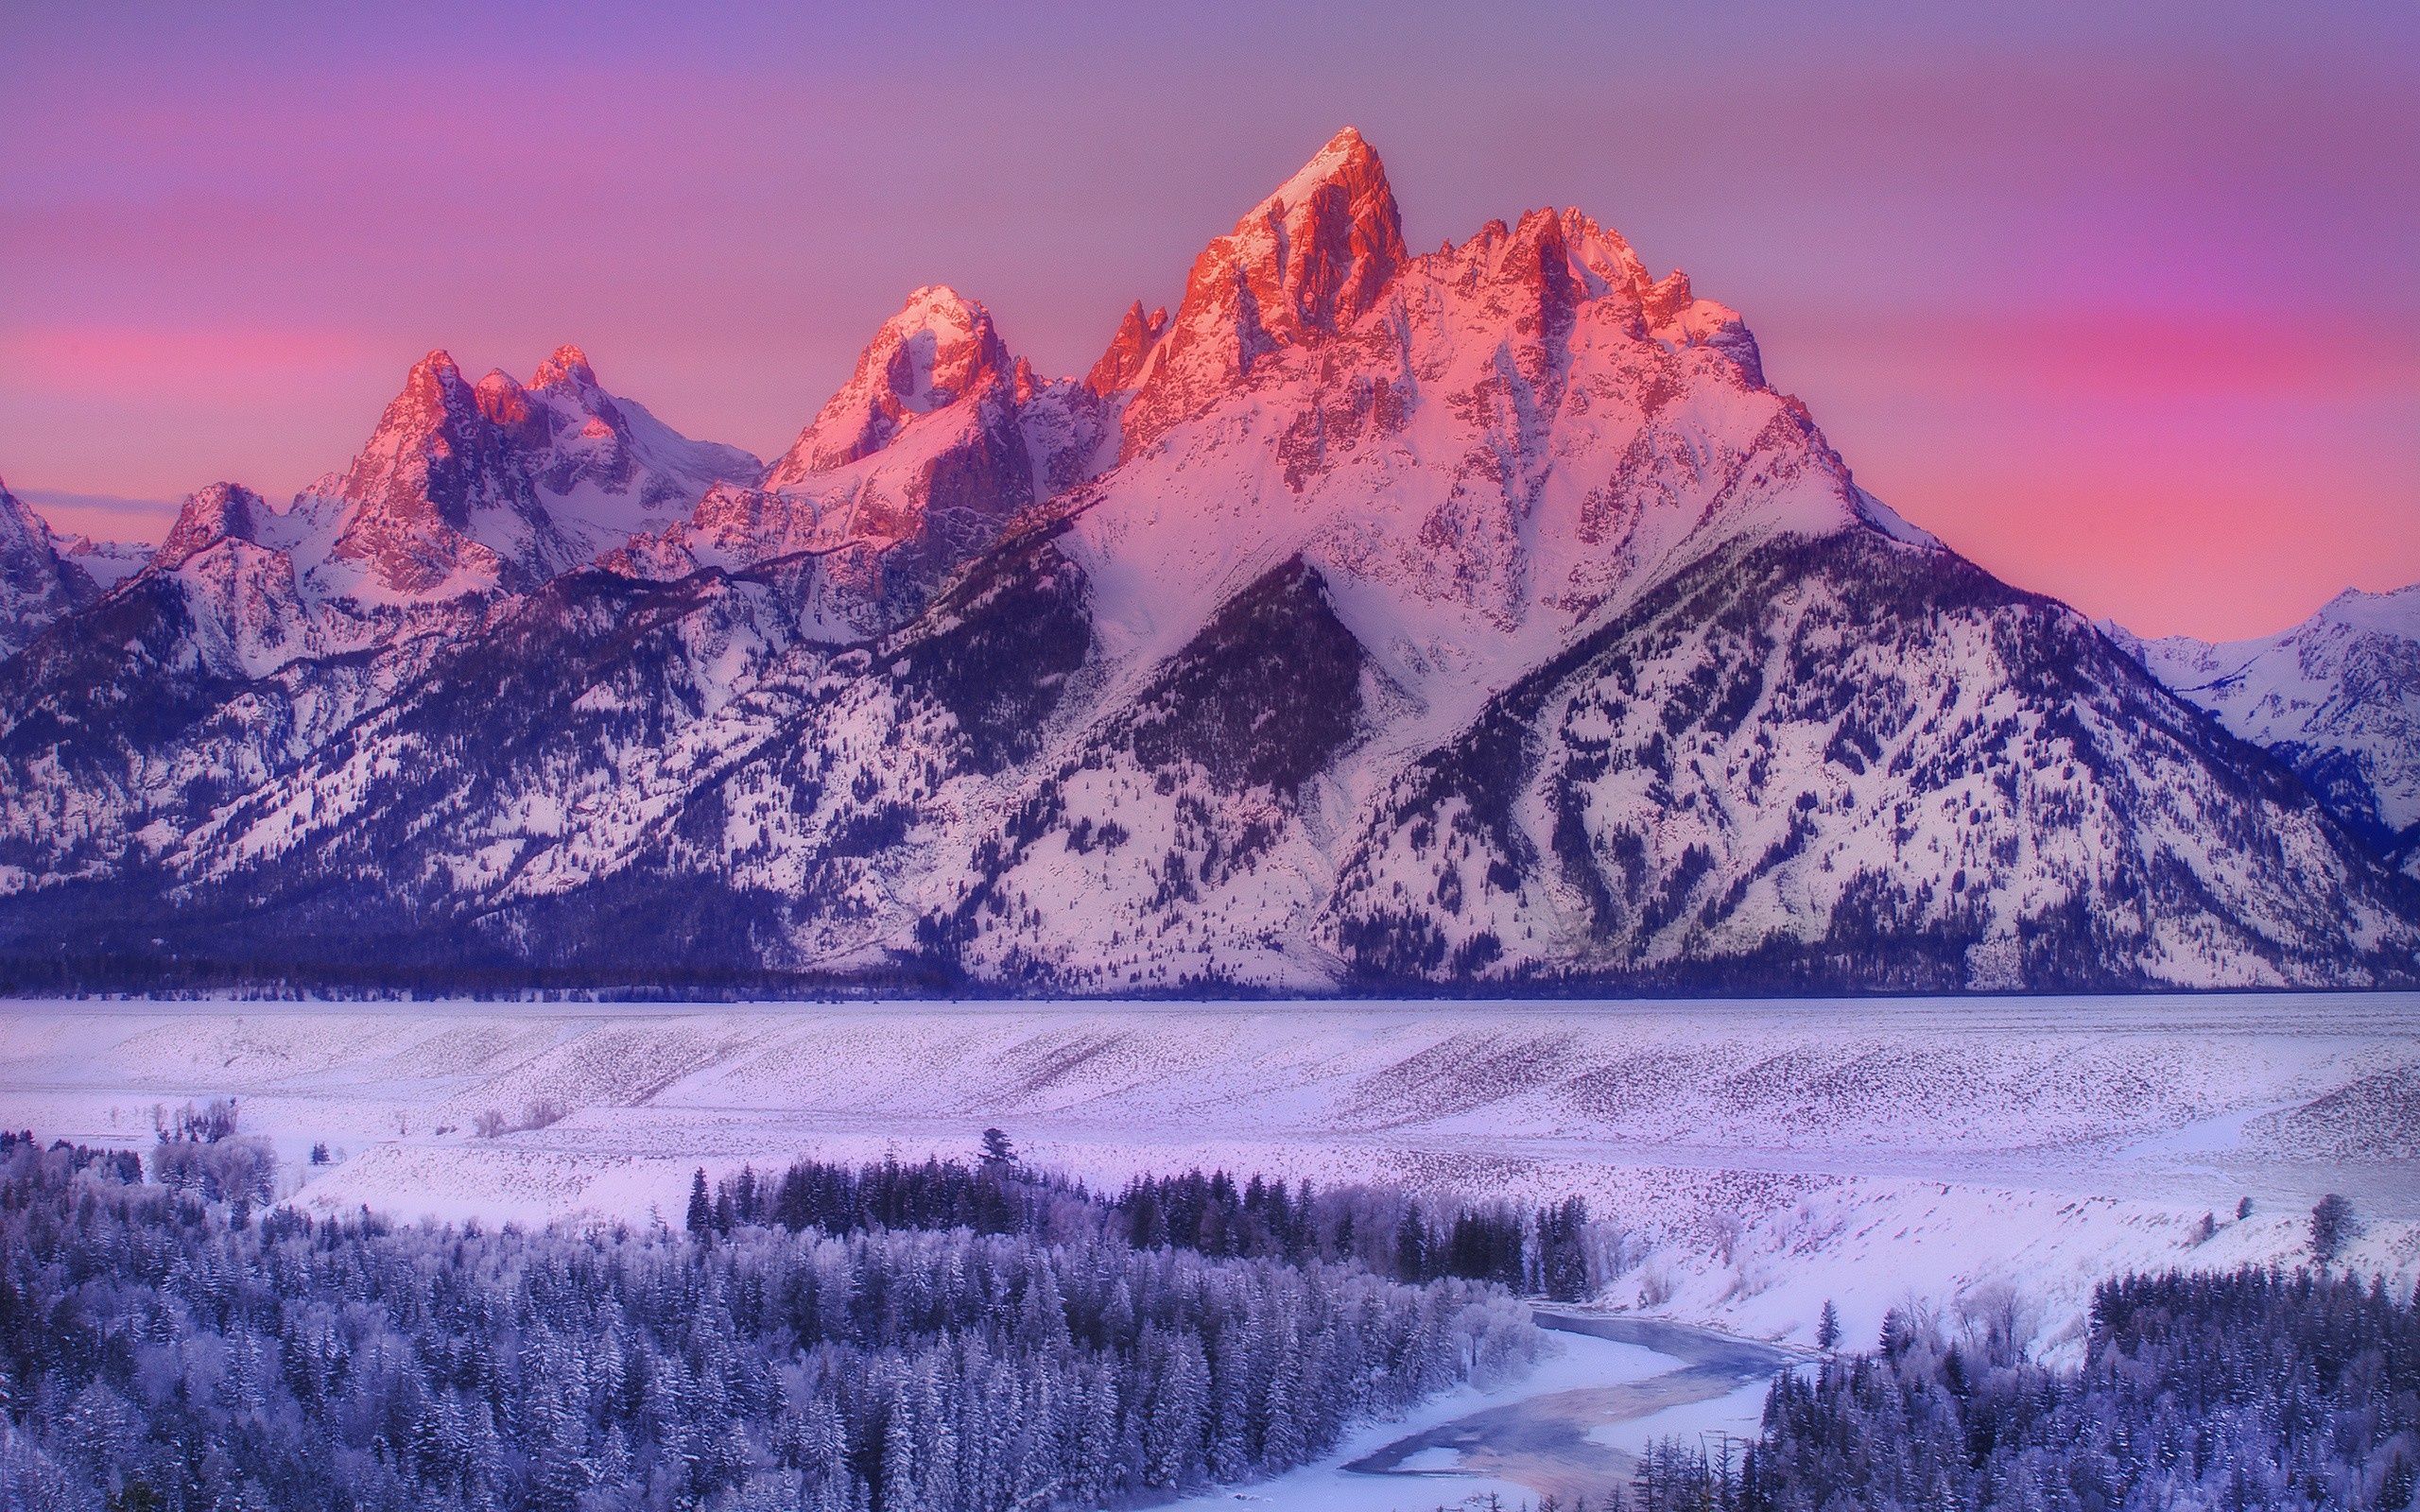 Purple Mountain Wallpaper Images  Free Download on Freepik